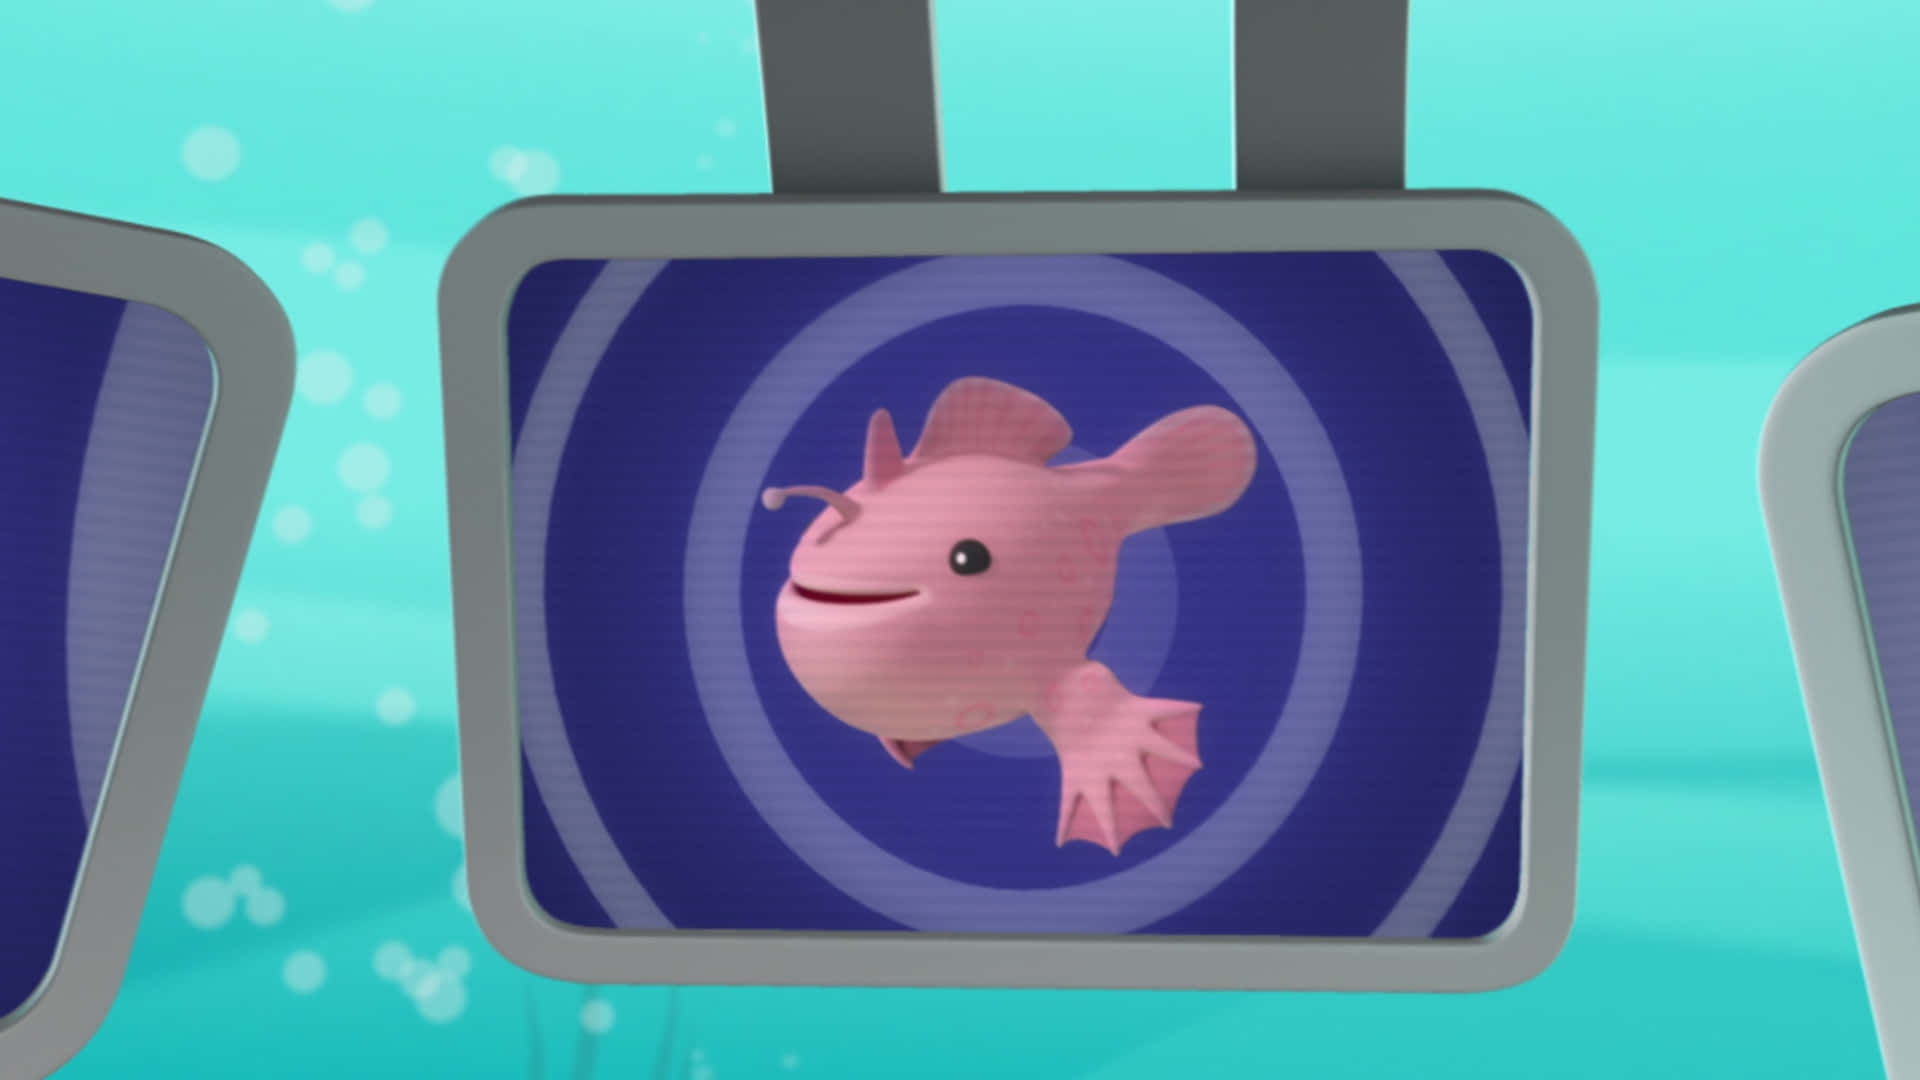 Einrosa Fisch Hängt An Zwei Bildschirmen. Wallpaper